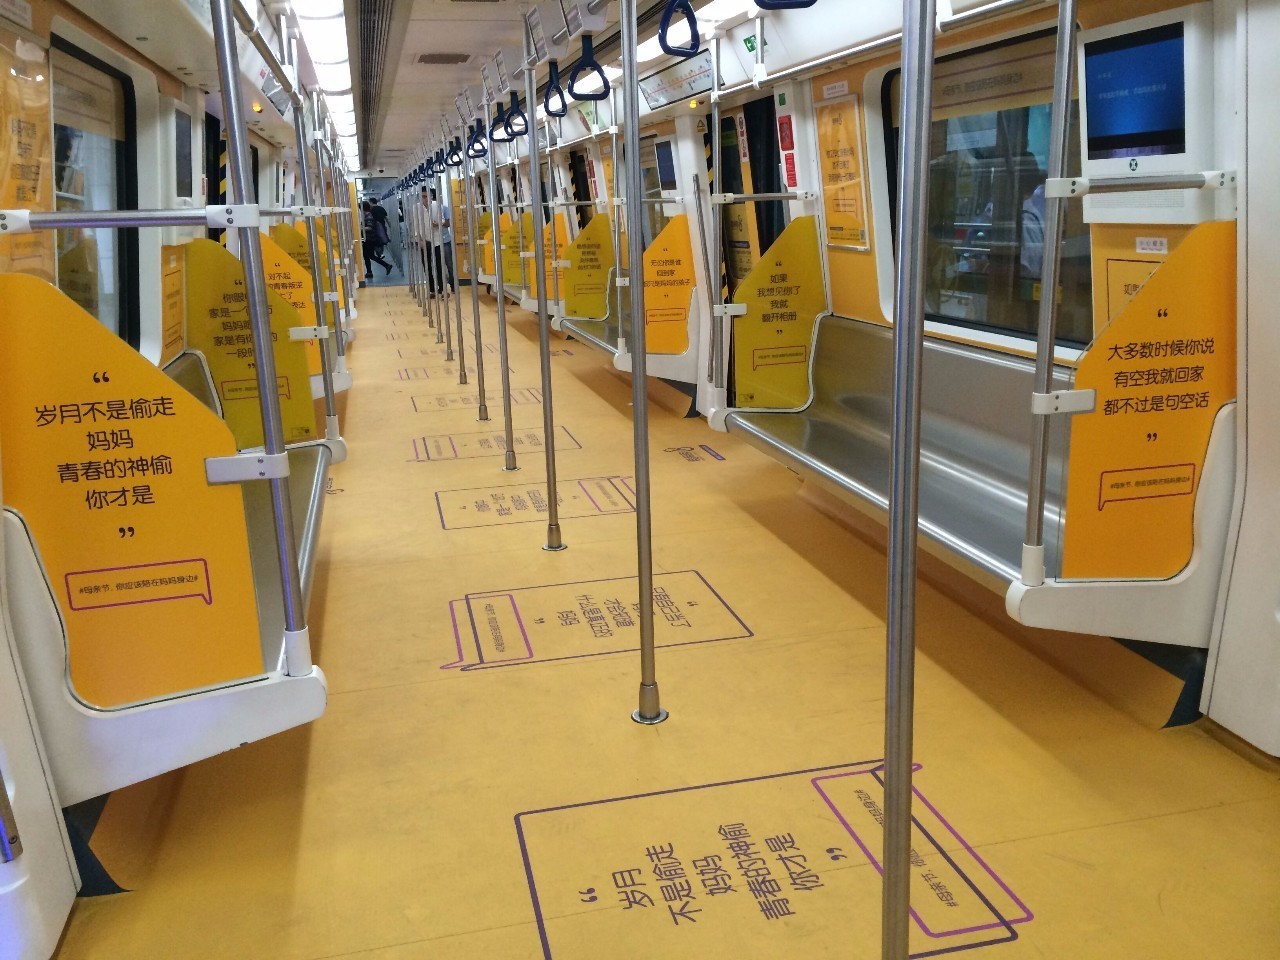 这是一列很黄的地铁,却感动了全深圳人!